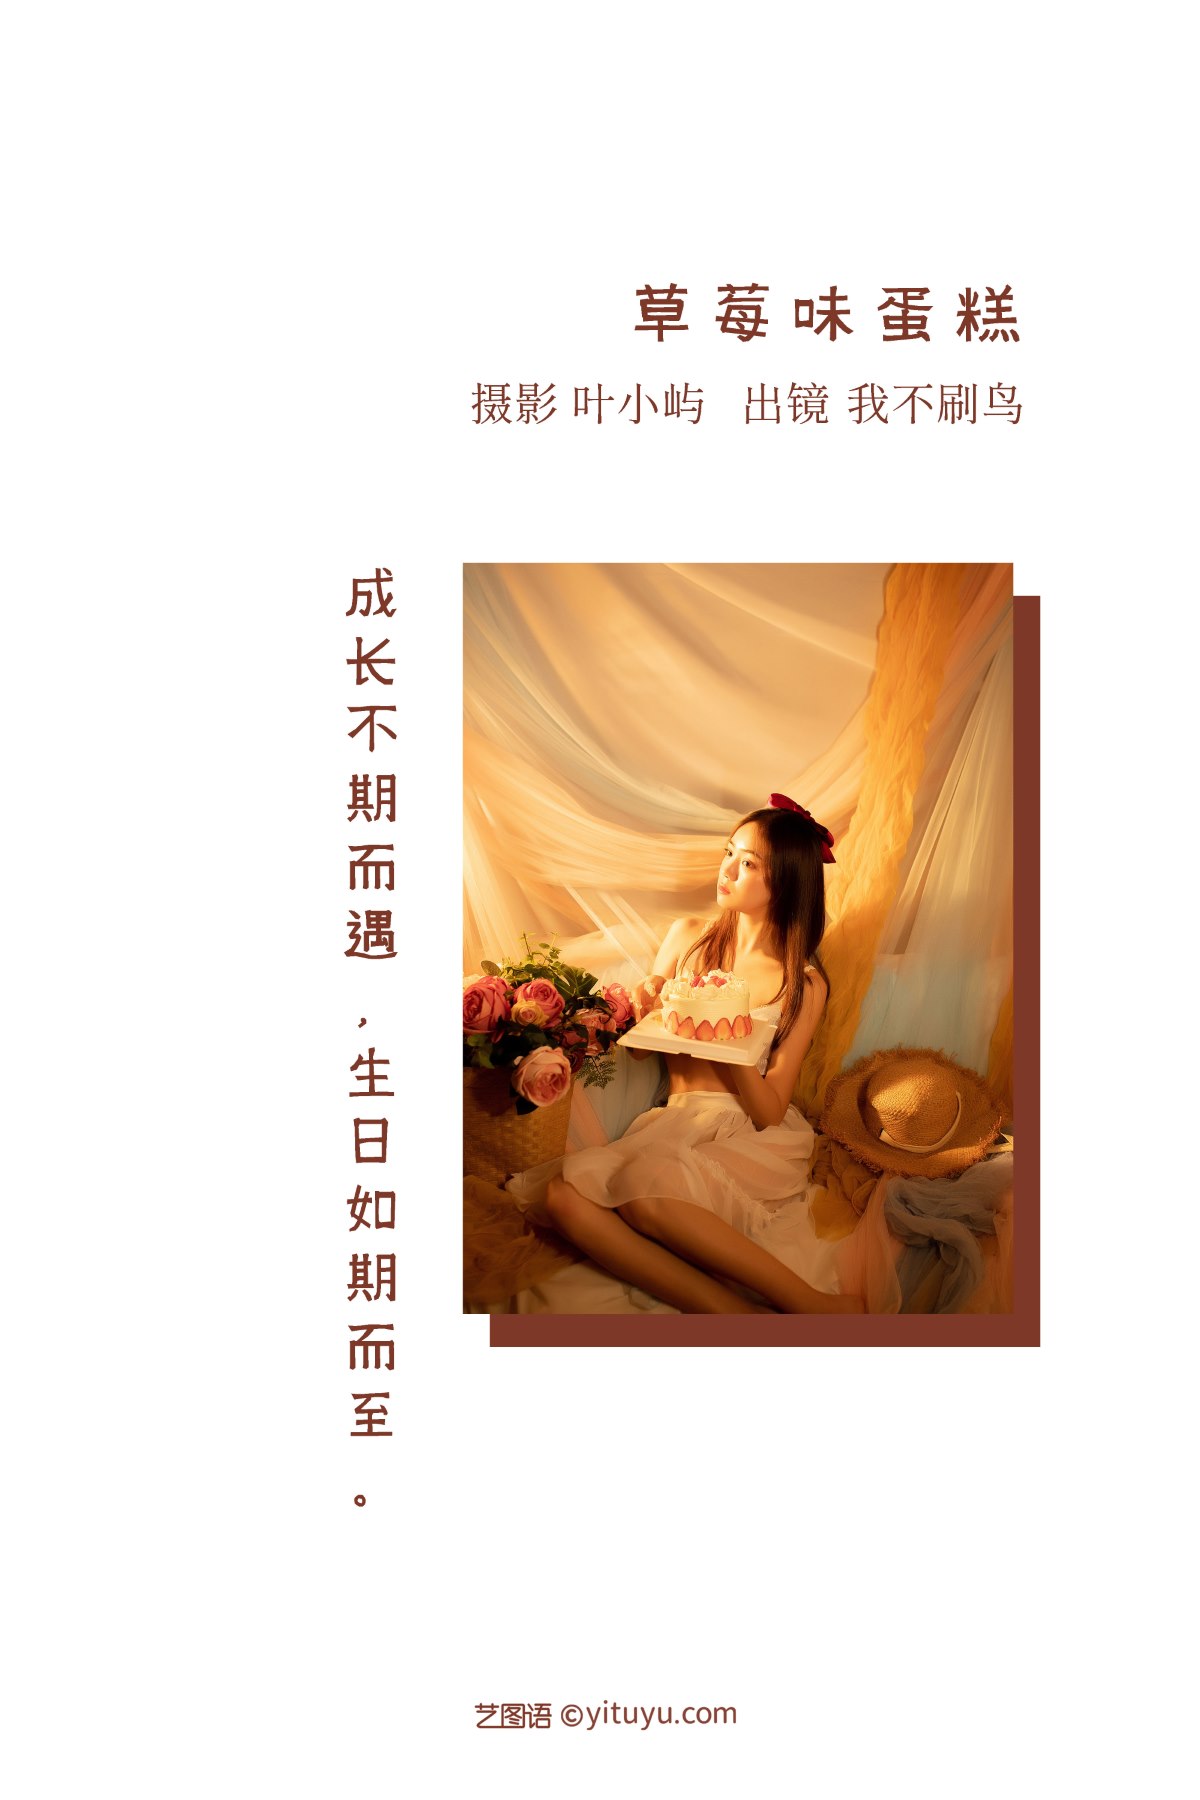 YiTuYu艺图语 Vol 2328 Wo Bu Shua Niao 0001 7474738759.jpg